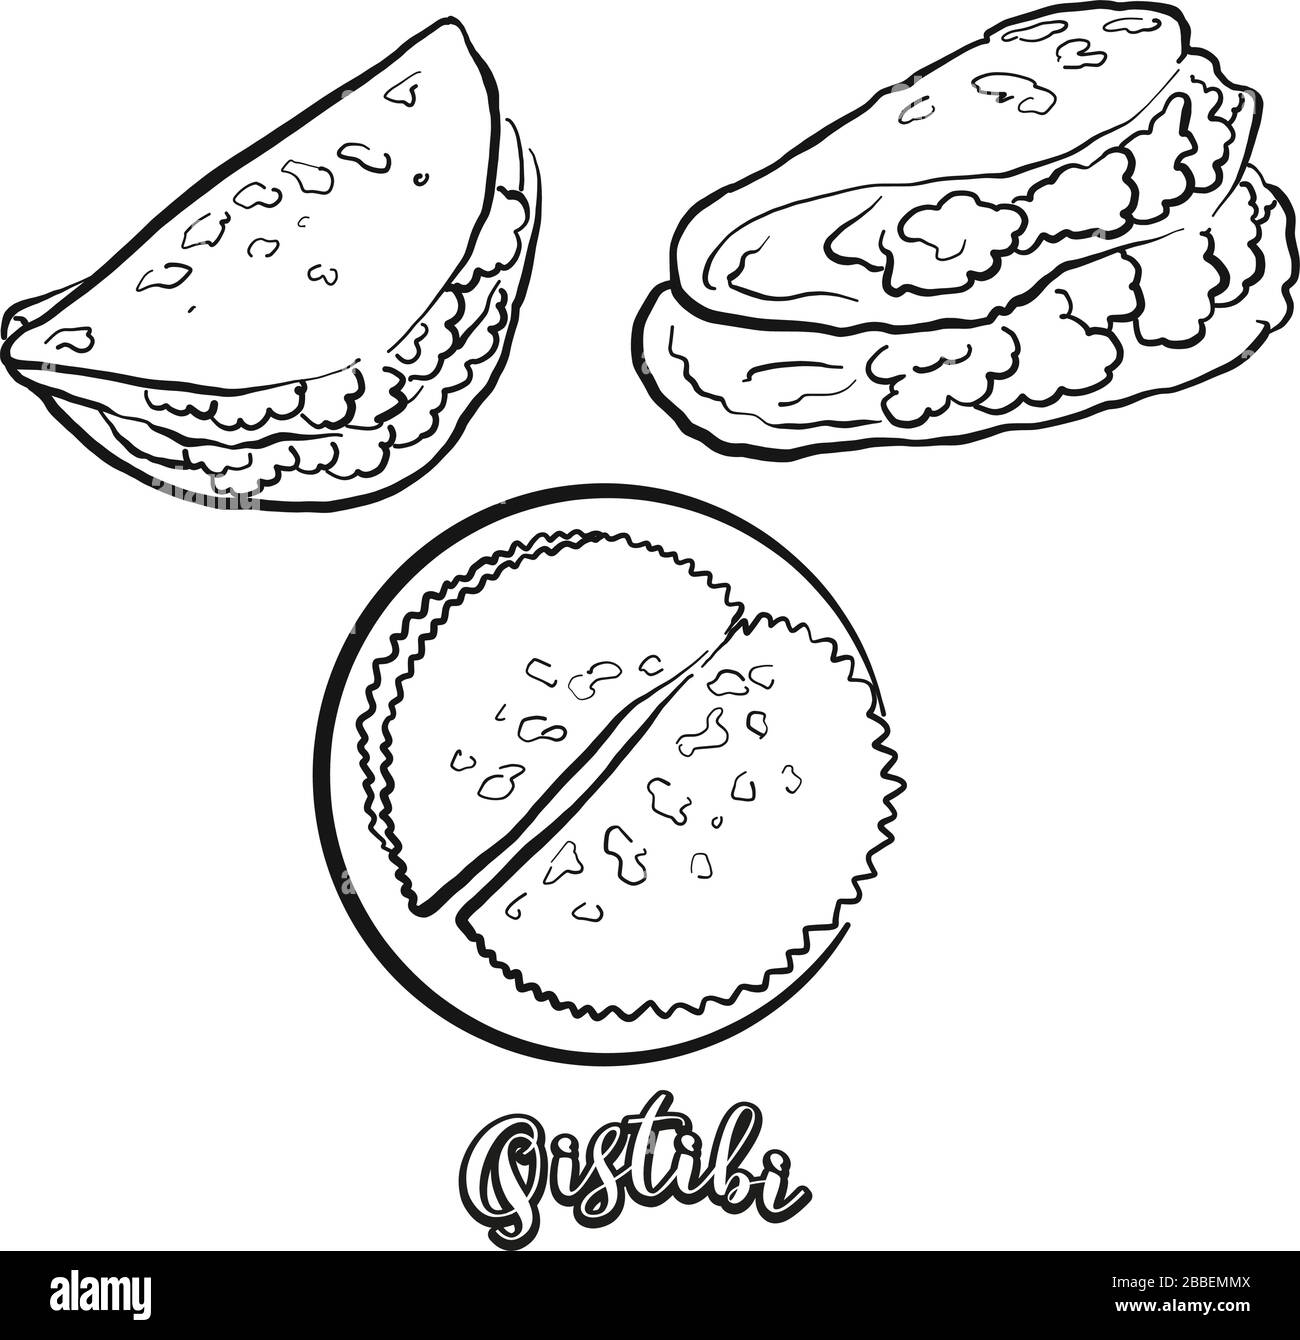 Lo schizzo del cibo di Qistibi è separato su bianco. Disegno vettoriale di Flatbread, di solito noto in Tatarstan, Bashkortostan. Serie di illustrazioni alimentari. Illustrazione Vettoriale